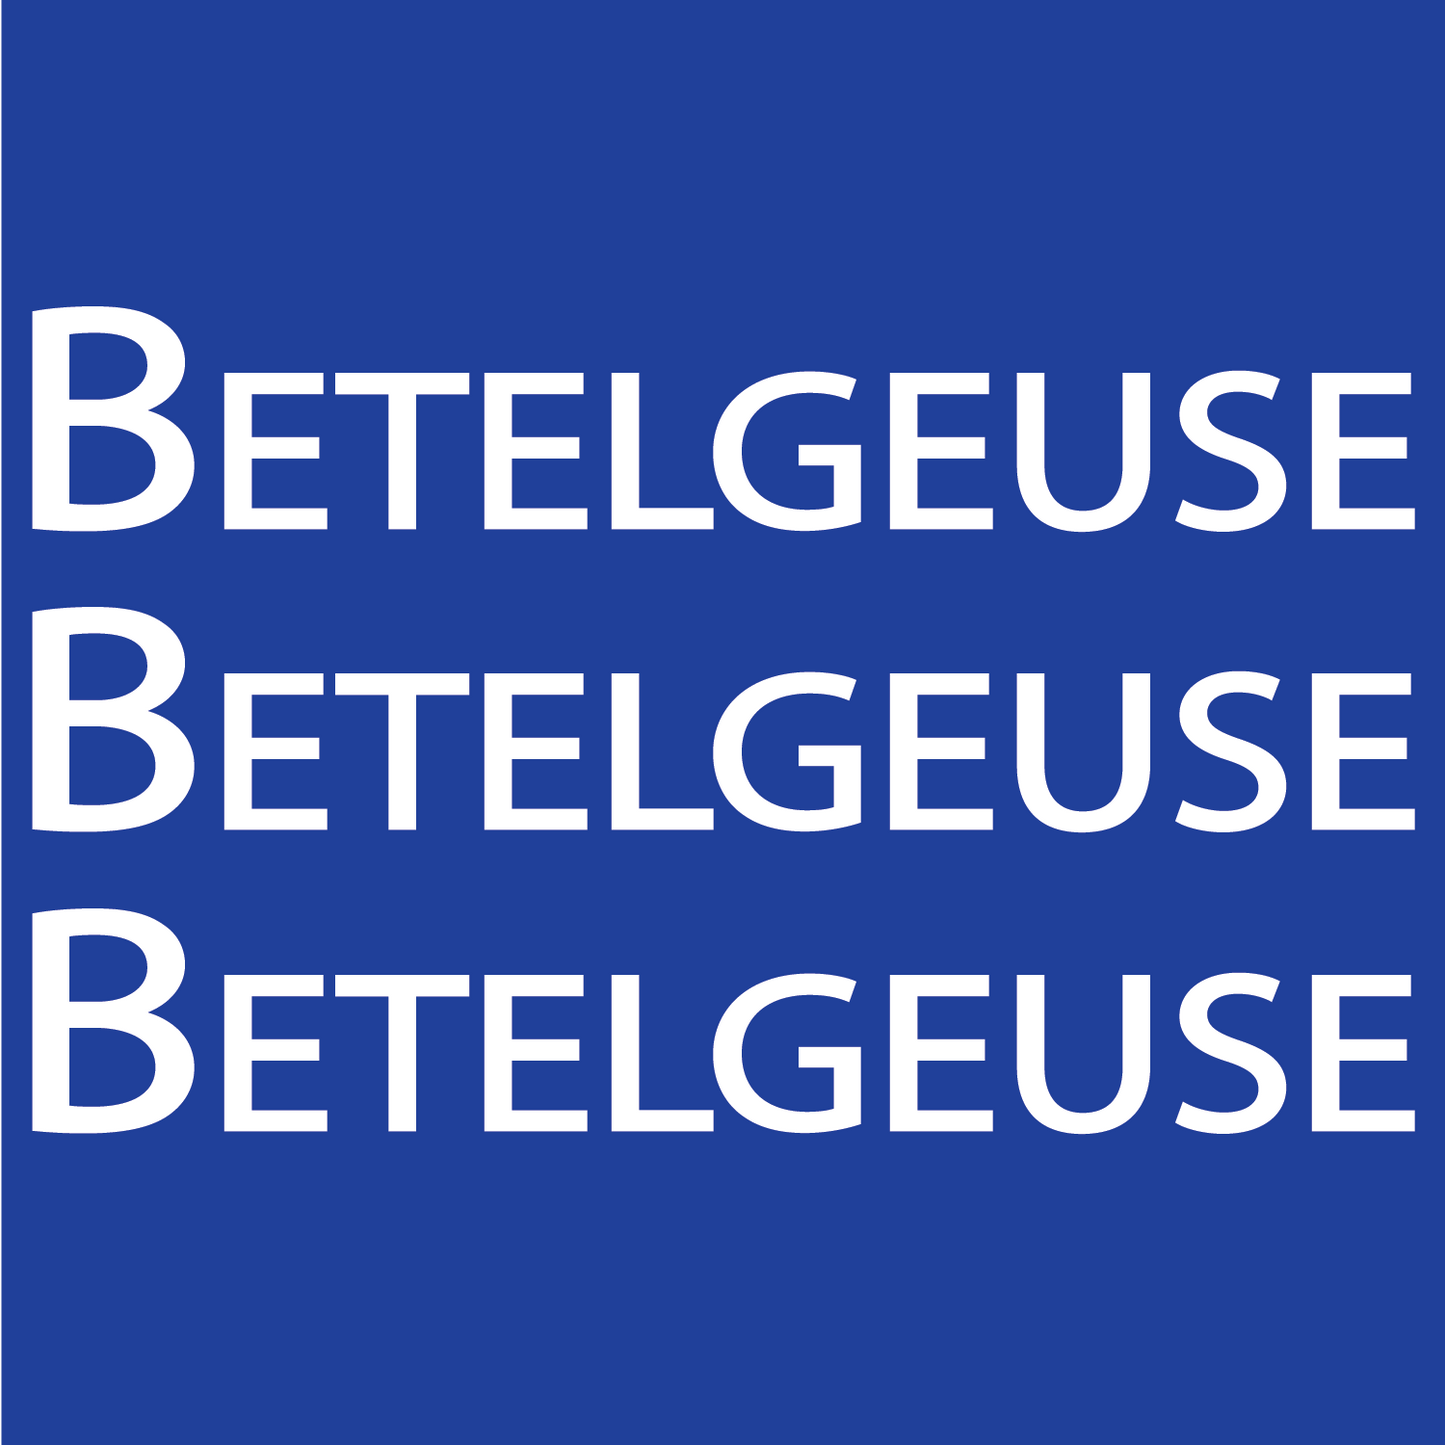 Betelgeuse, Betelgeuse, Betelgeuse